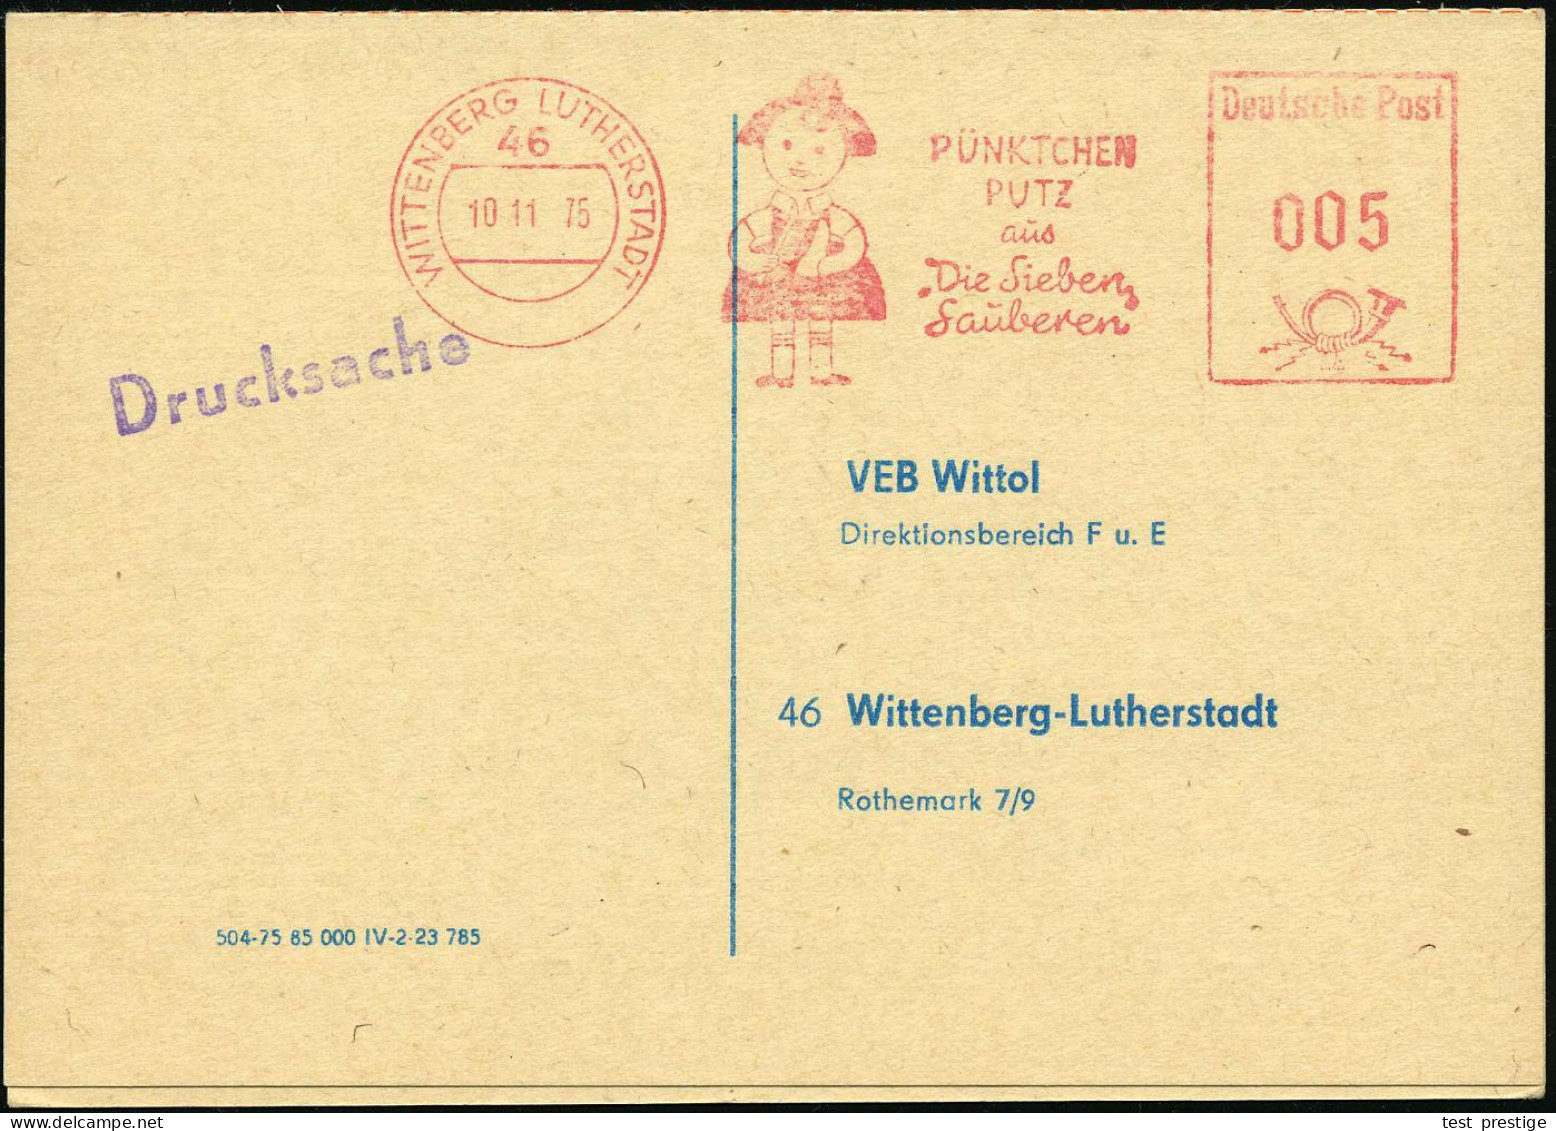 46 WITTENBERG LUTHERSTADT/ PÜNKTCHEN/ PUTZ/ Aus/ "Die Sieben/ Sauberen" 1975 (10.11.) AFS Francotyp = Comic-Figur "Pünkt - Química